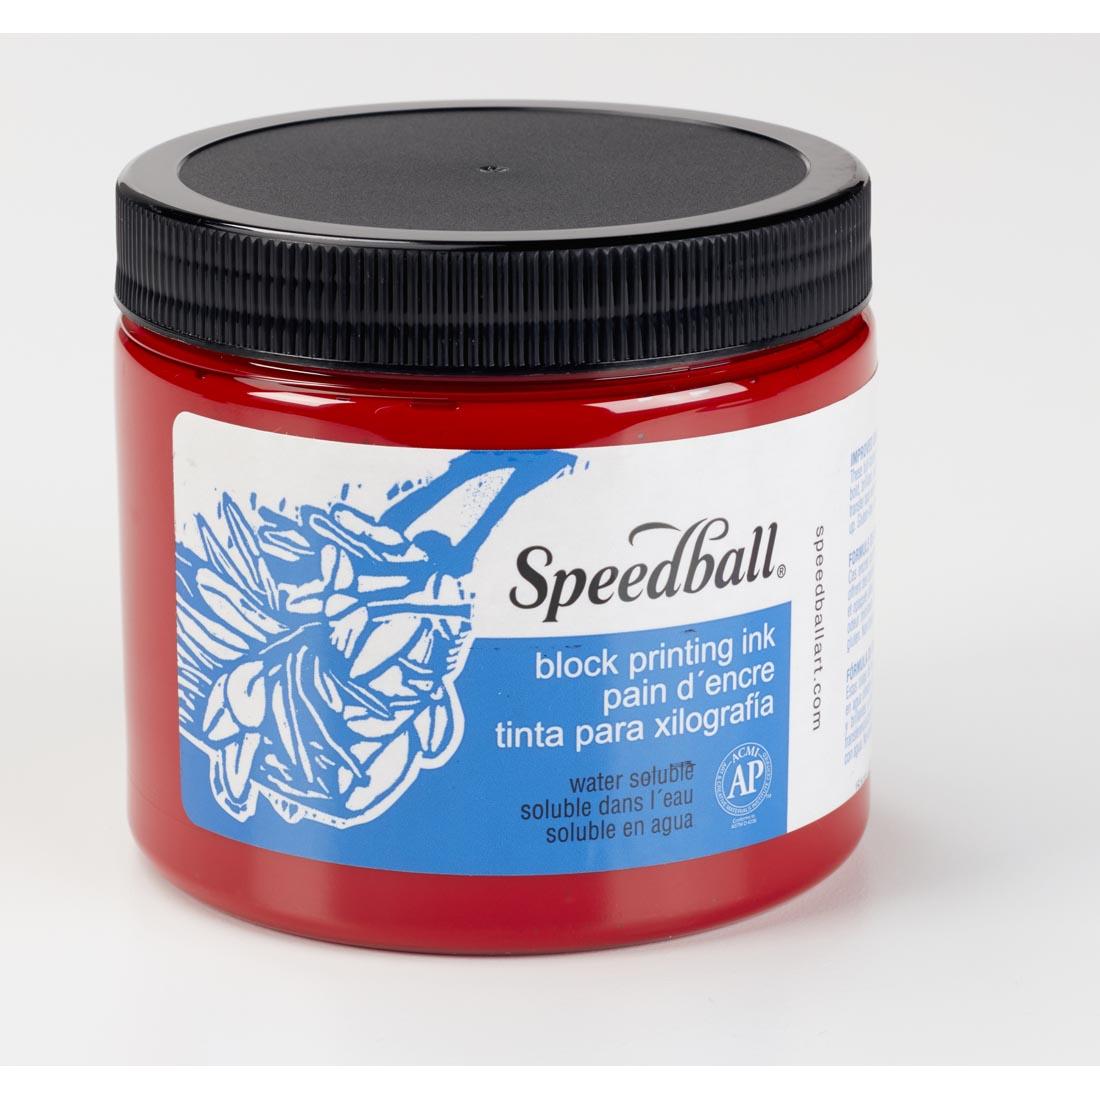 Jar of Red Speedball Water-Soluble Block Printing Ink